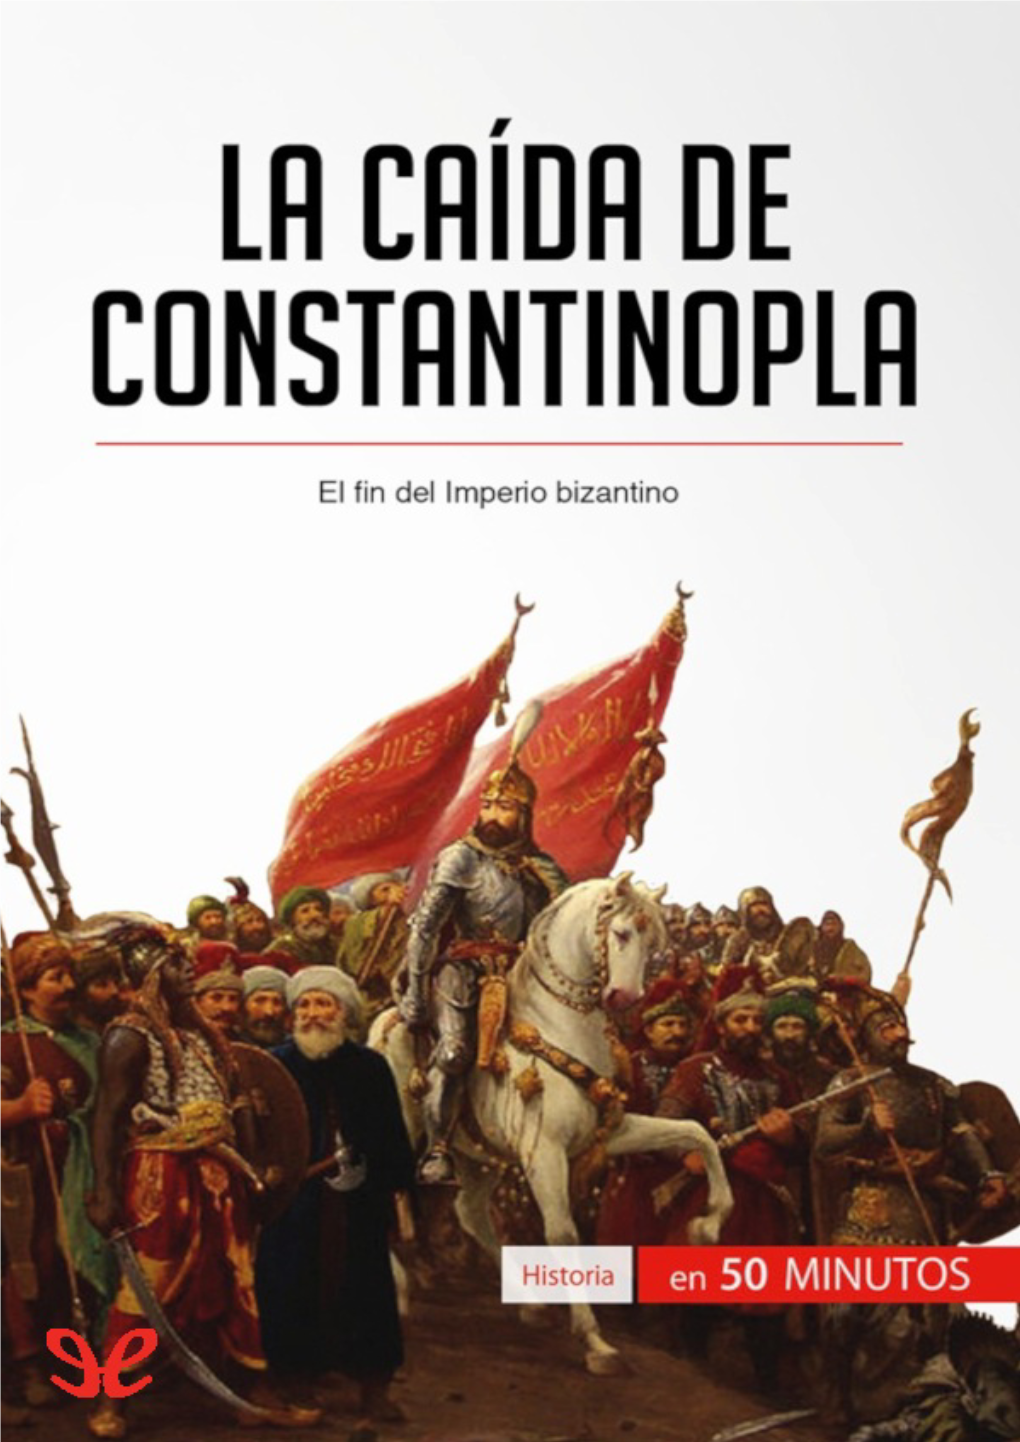 La Caída De Constantinopla, Que Le Aportará La Información Esencial Y Le Permitirá Ganar Tiempo